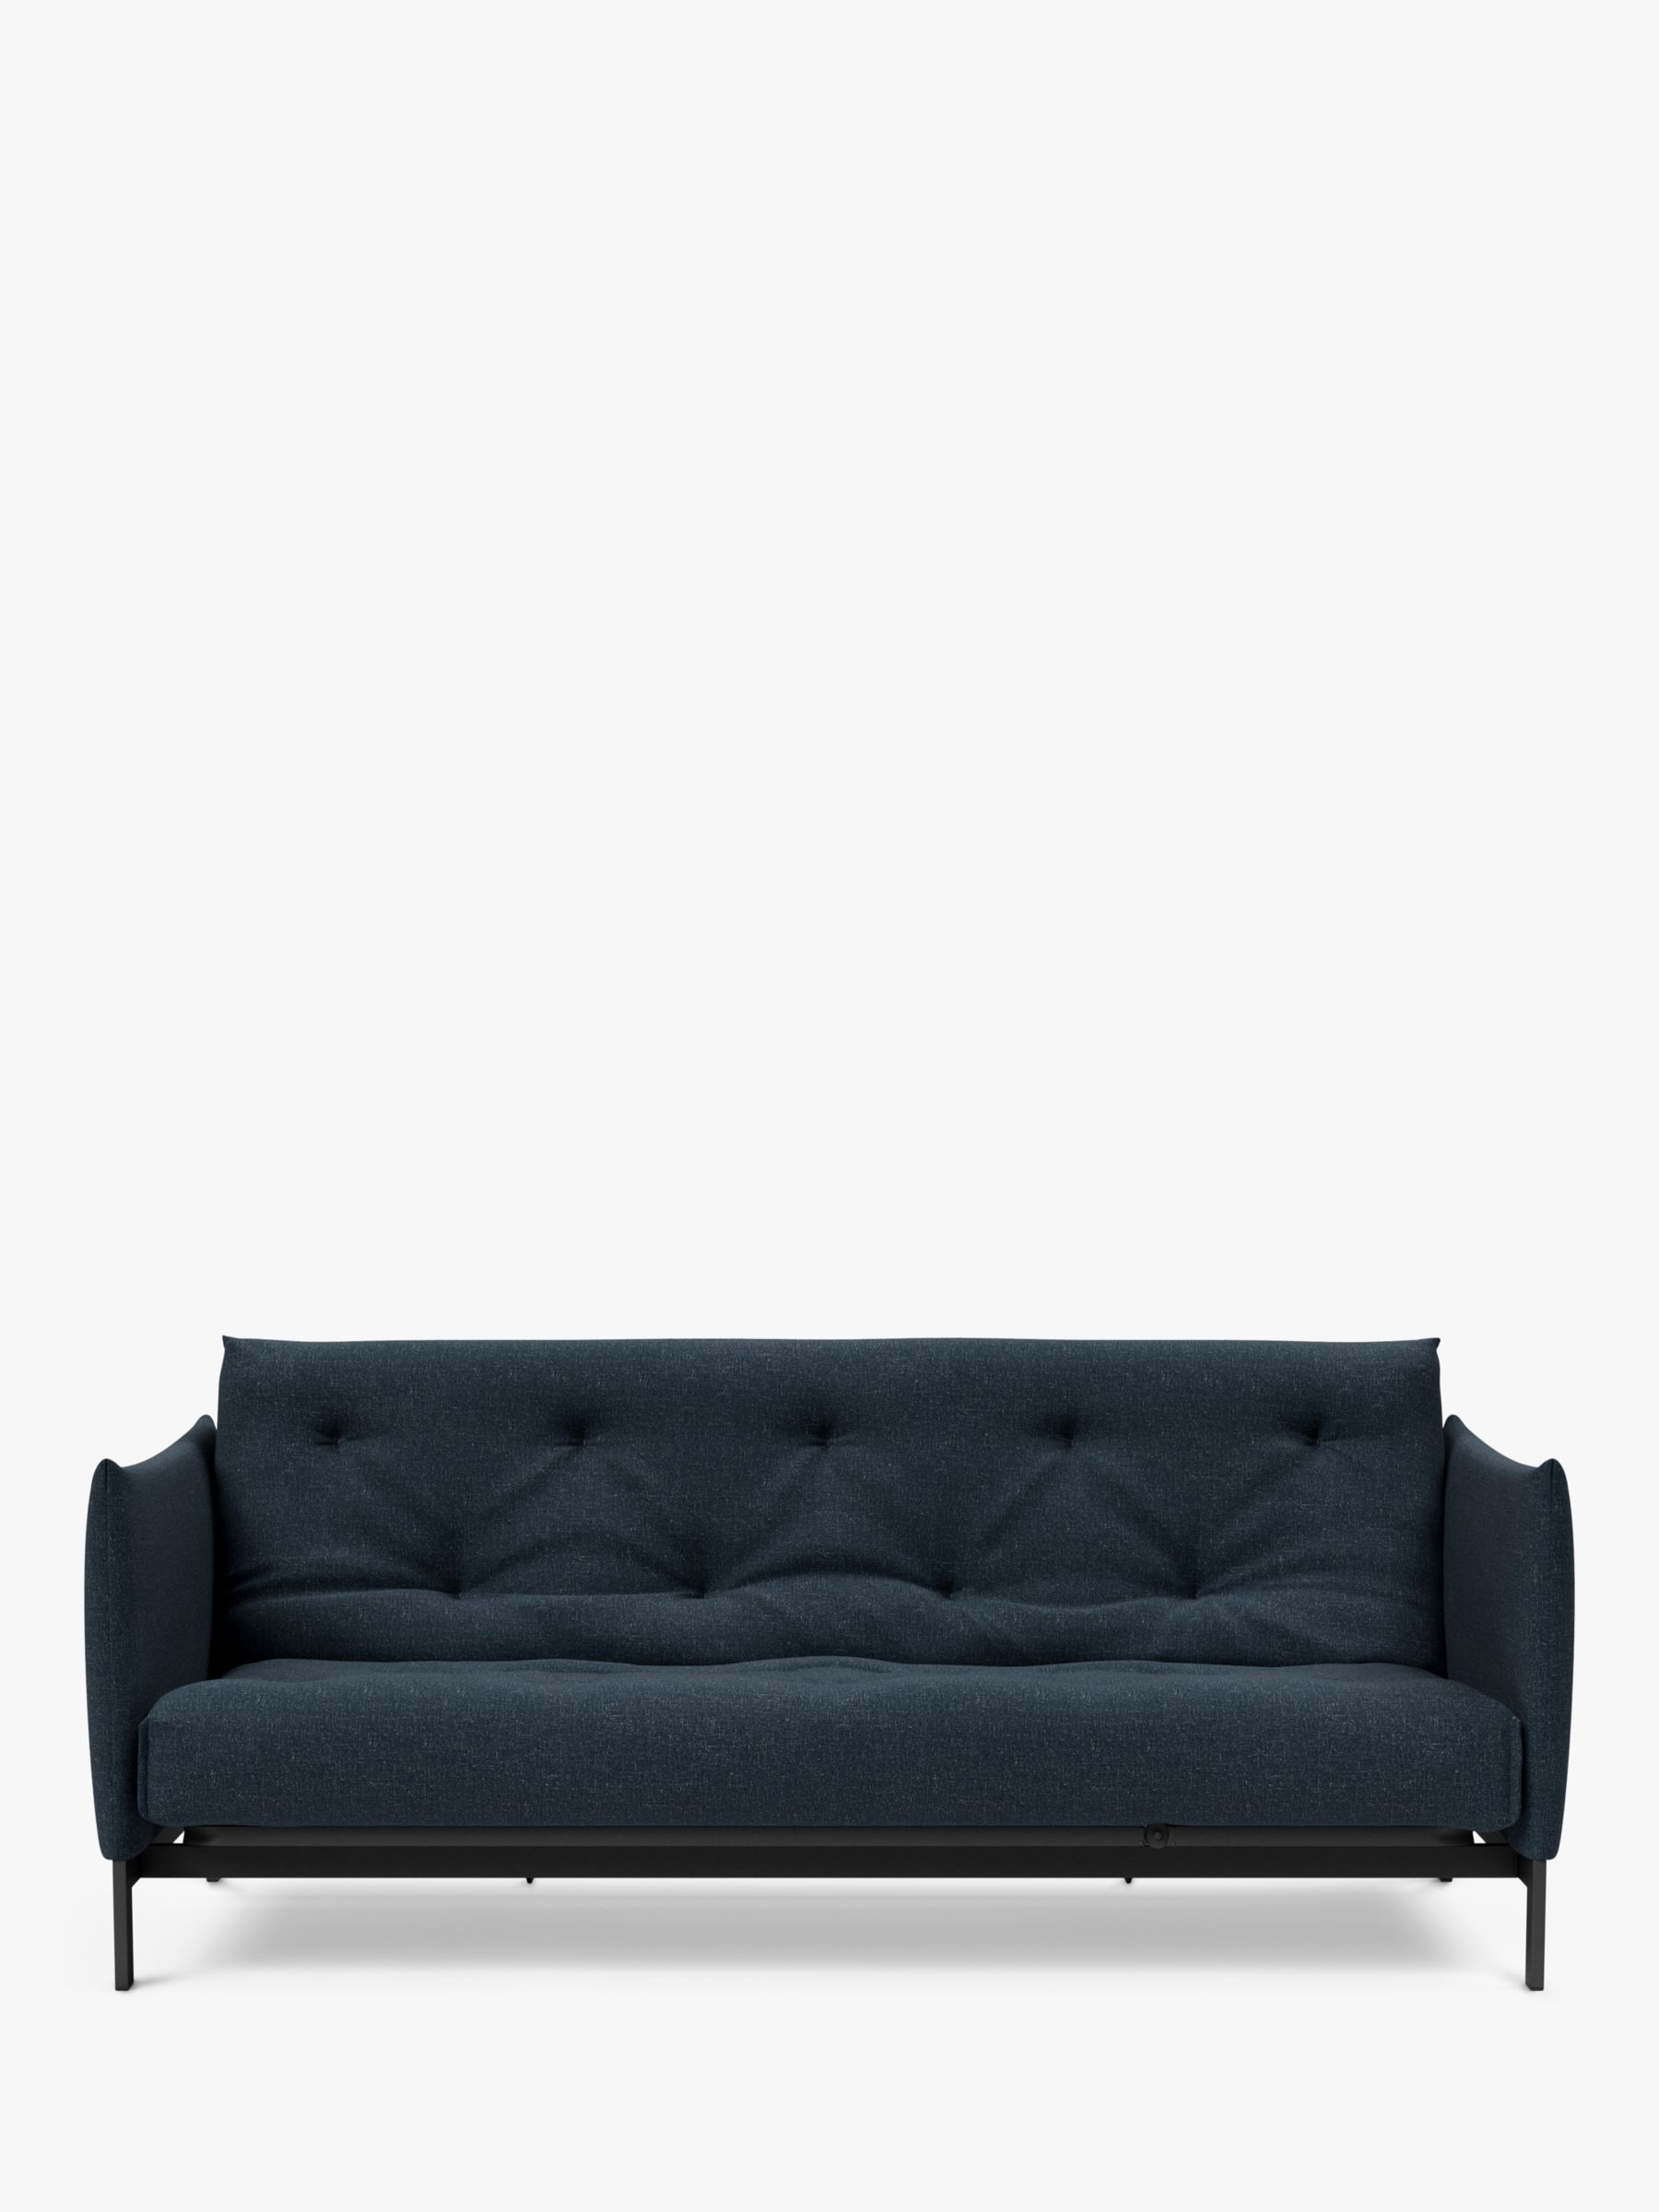 Junus Range, Innovation Living Junus Sofa Bed, Nist Blue